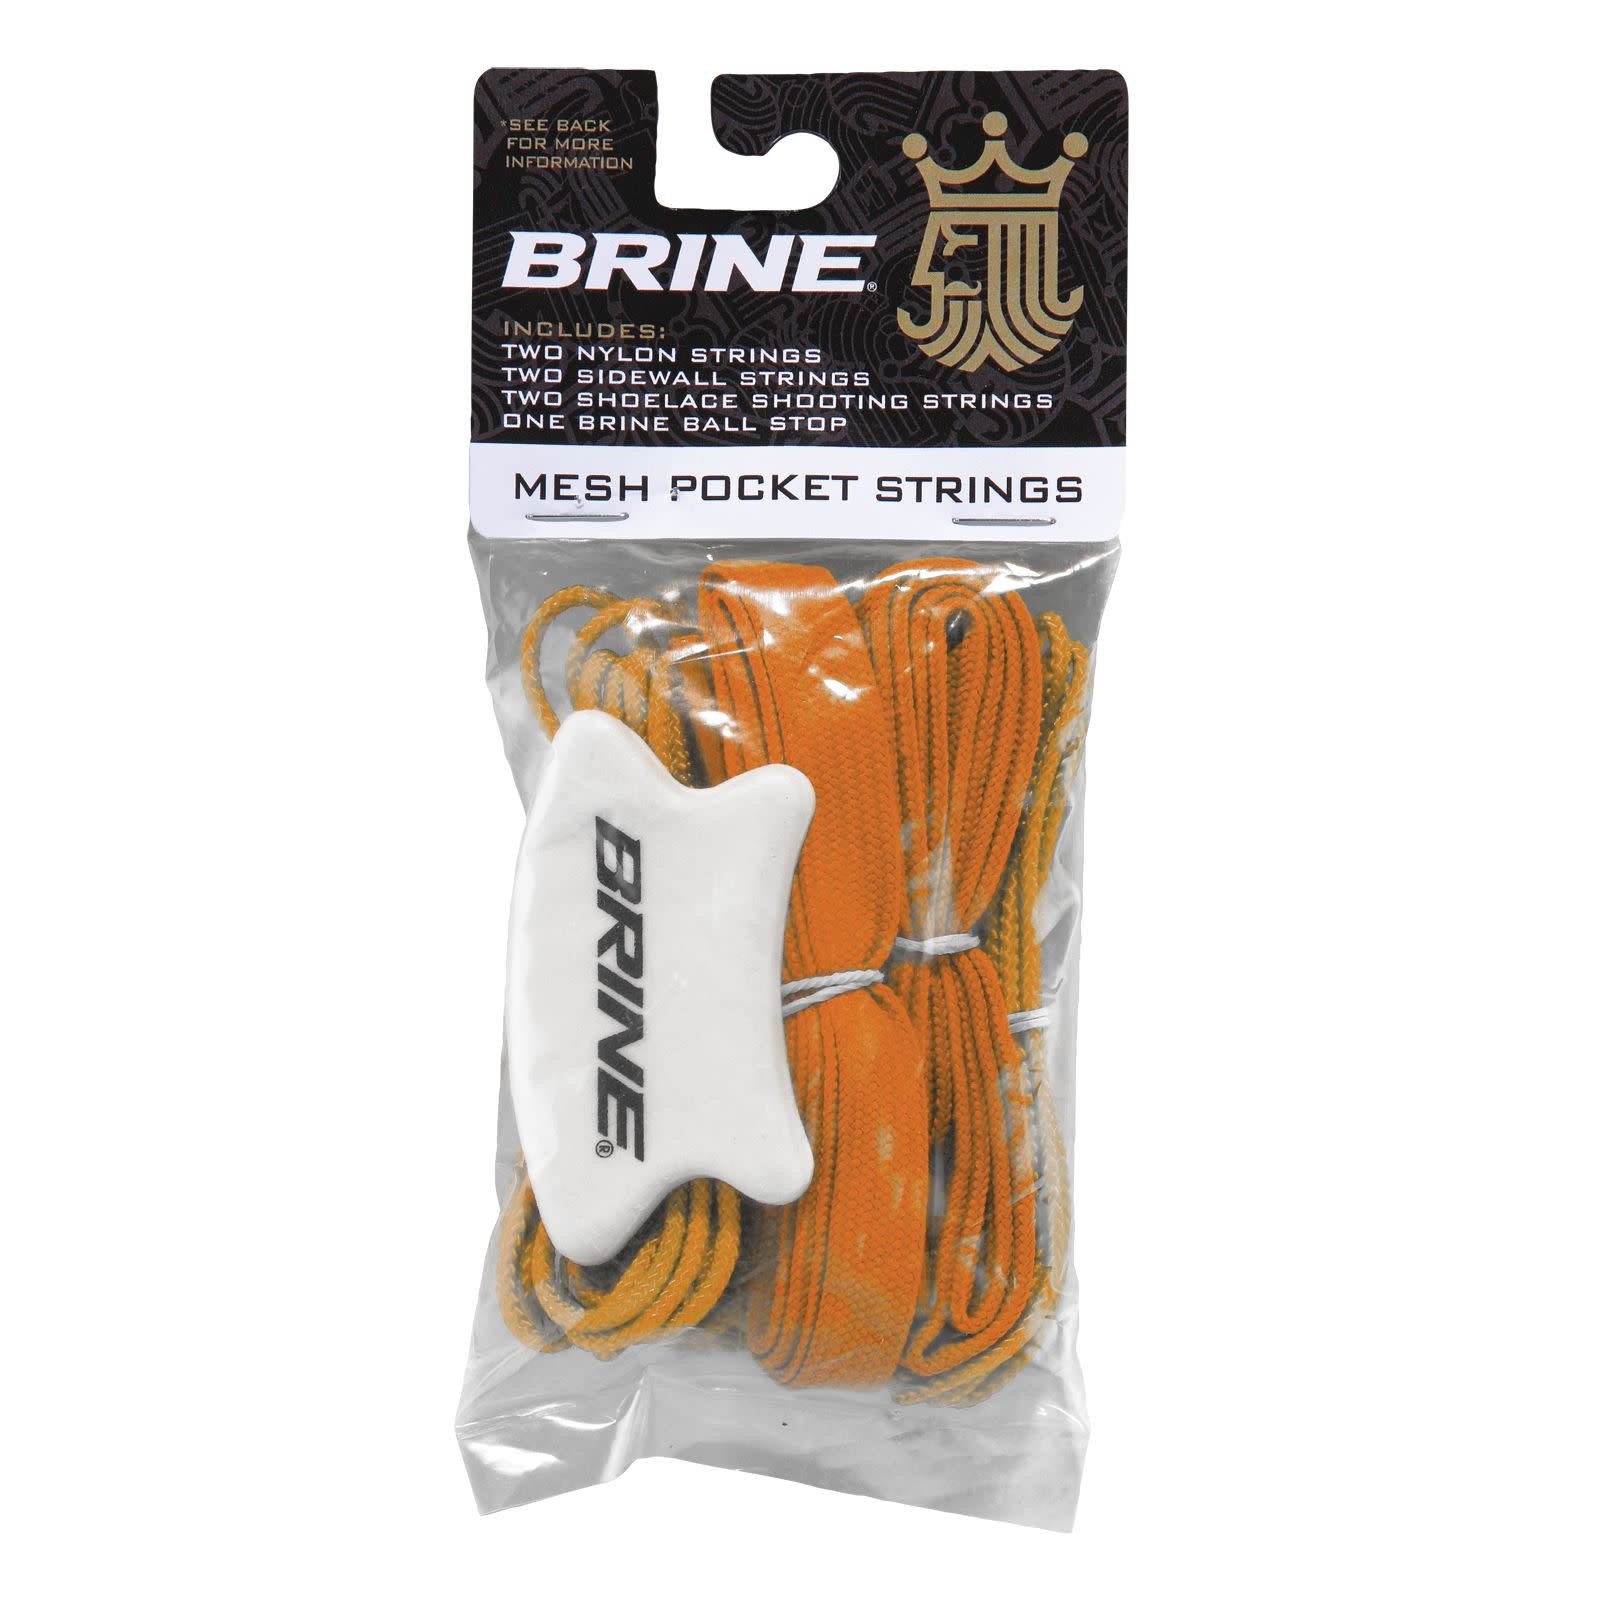 Brine Pocket Strings Kit Red Retail Packaging